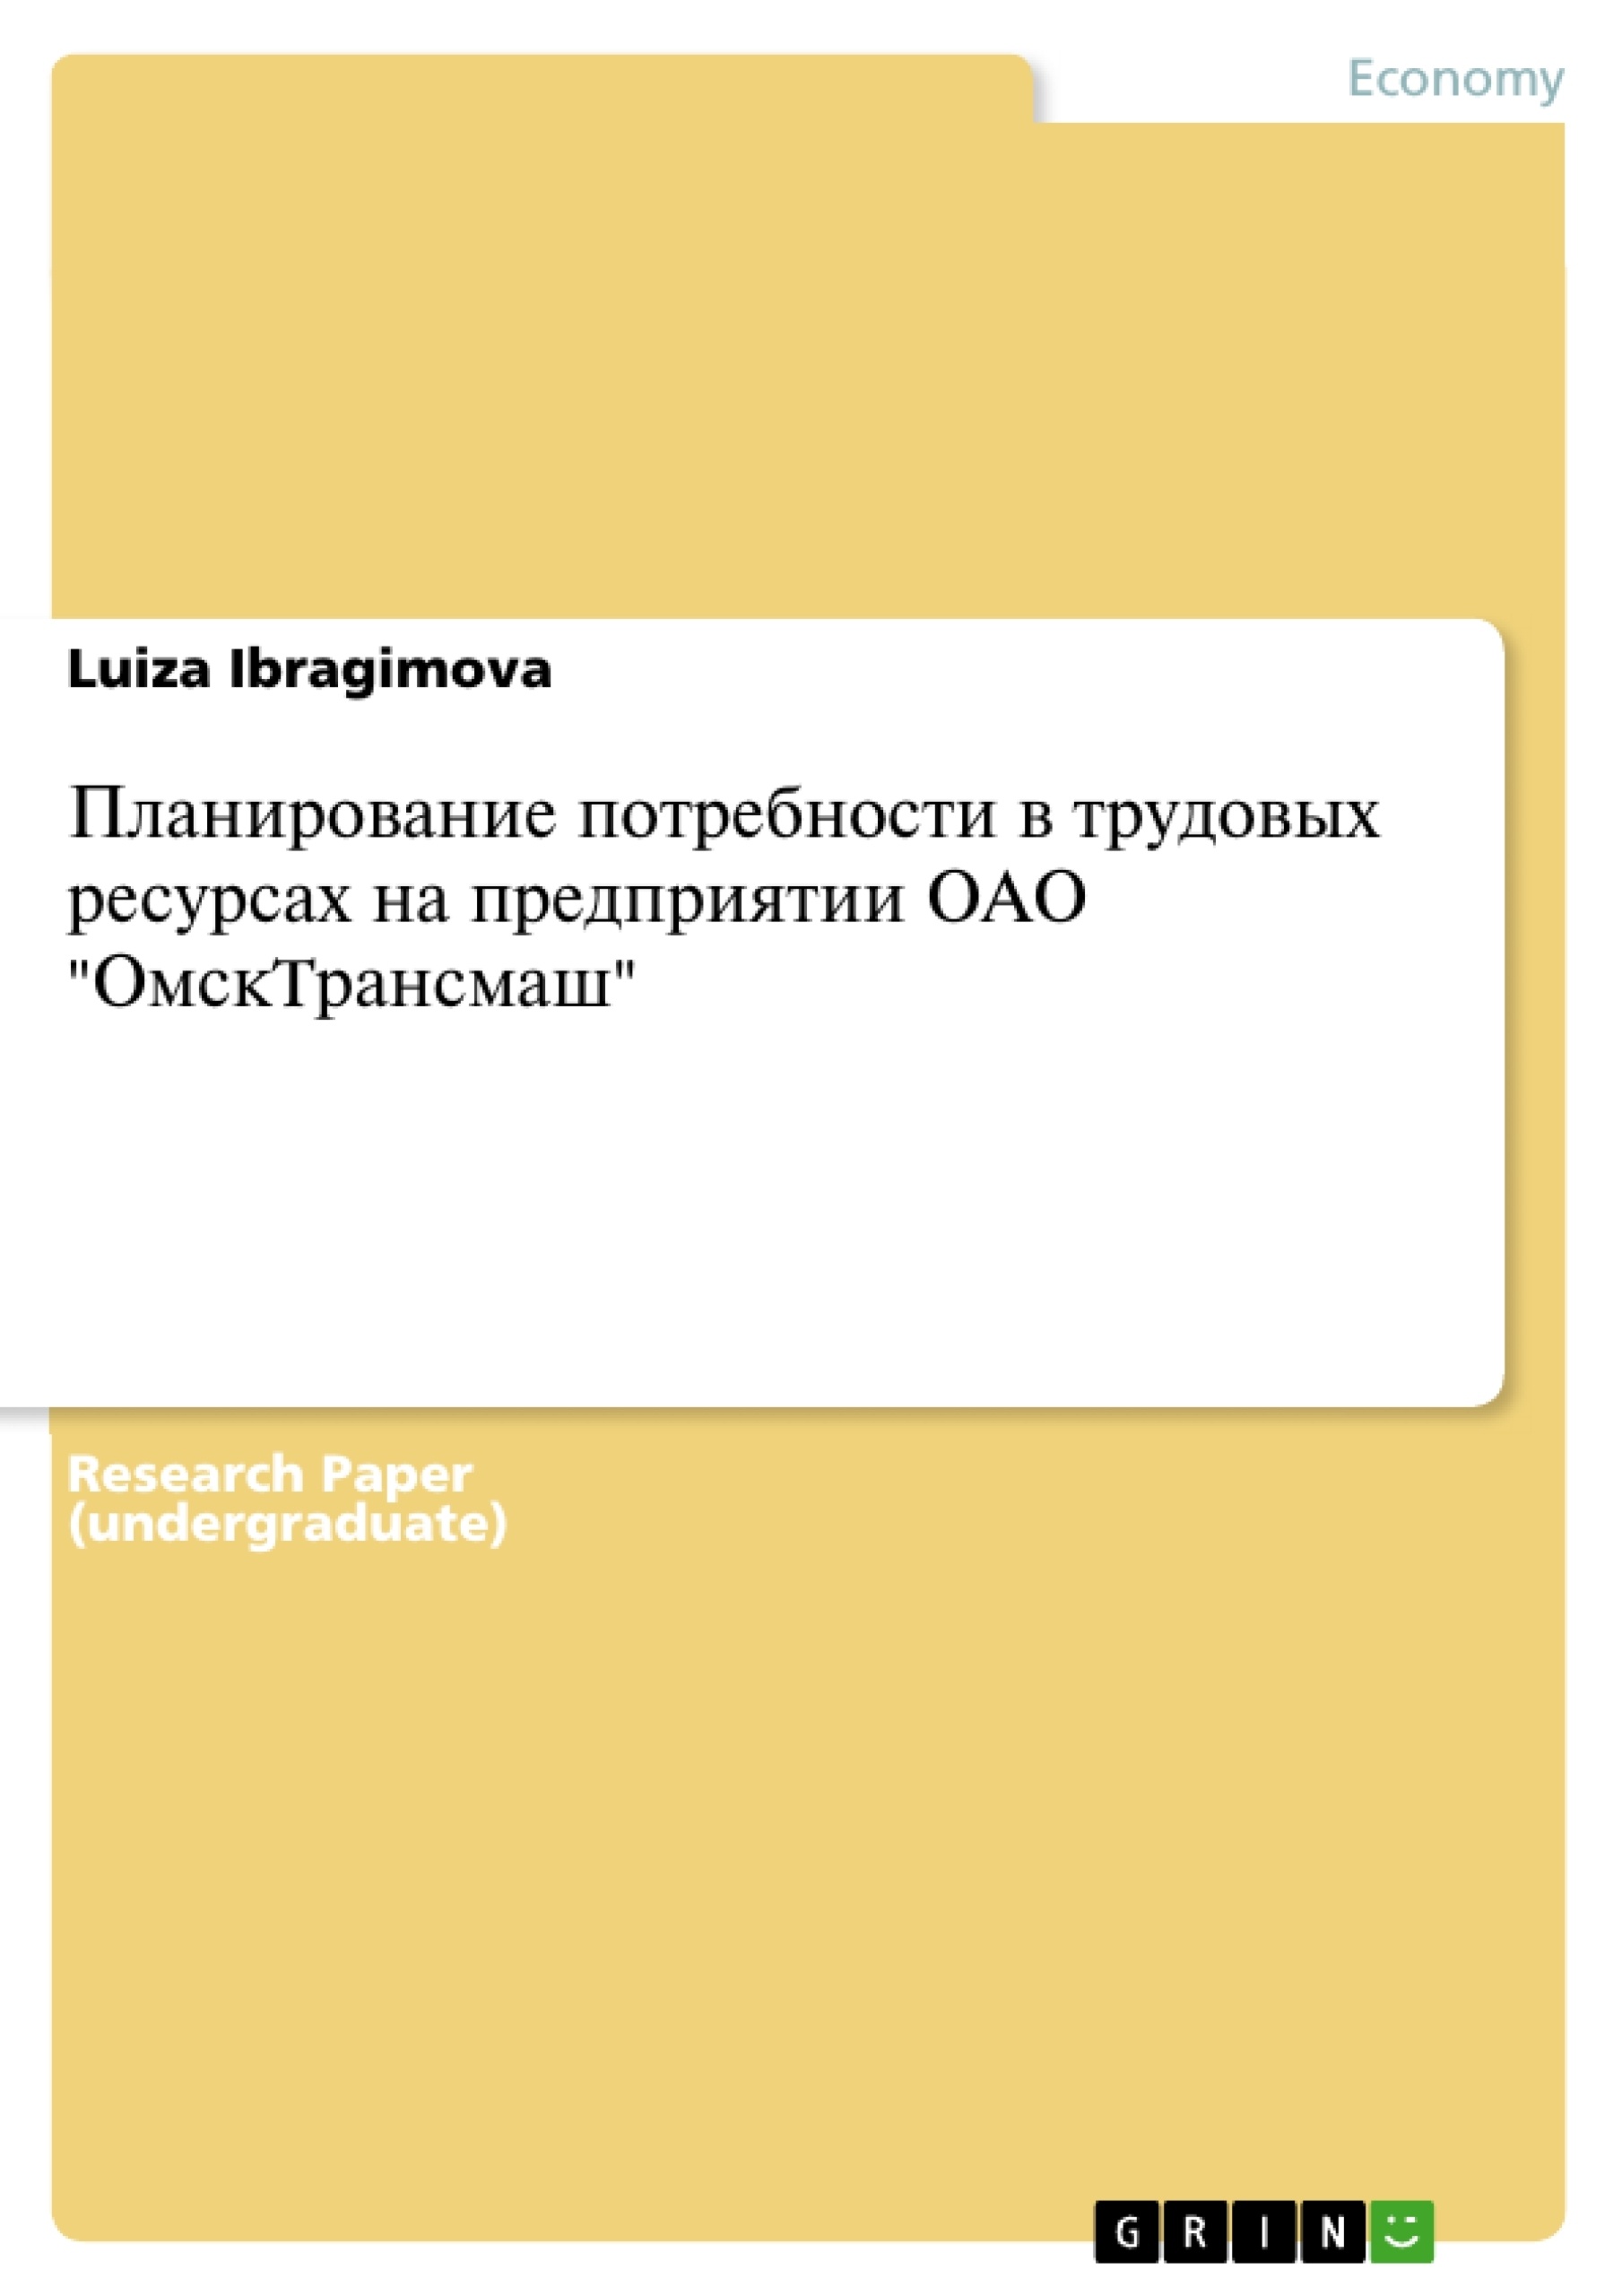 Título: Планирование потребности в трудовых ресурсах на предприятии ОАО "ОмскTрансмаш"